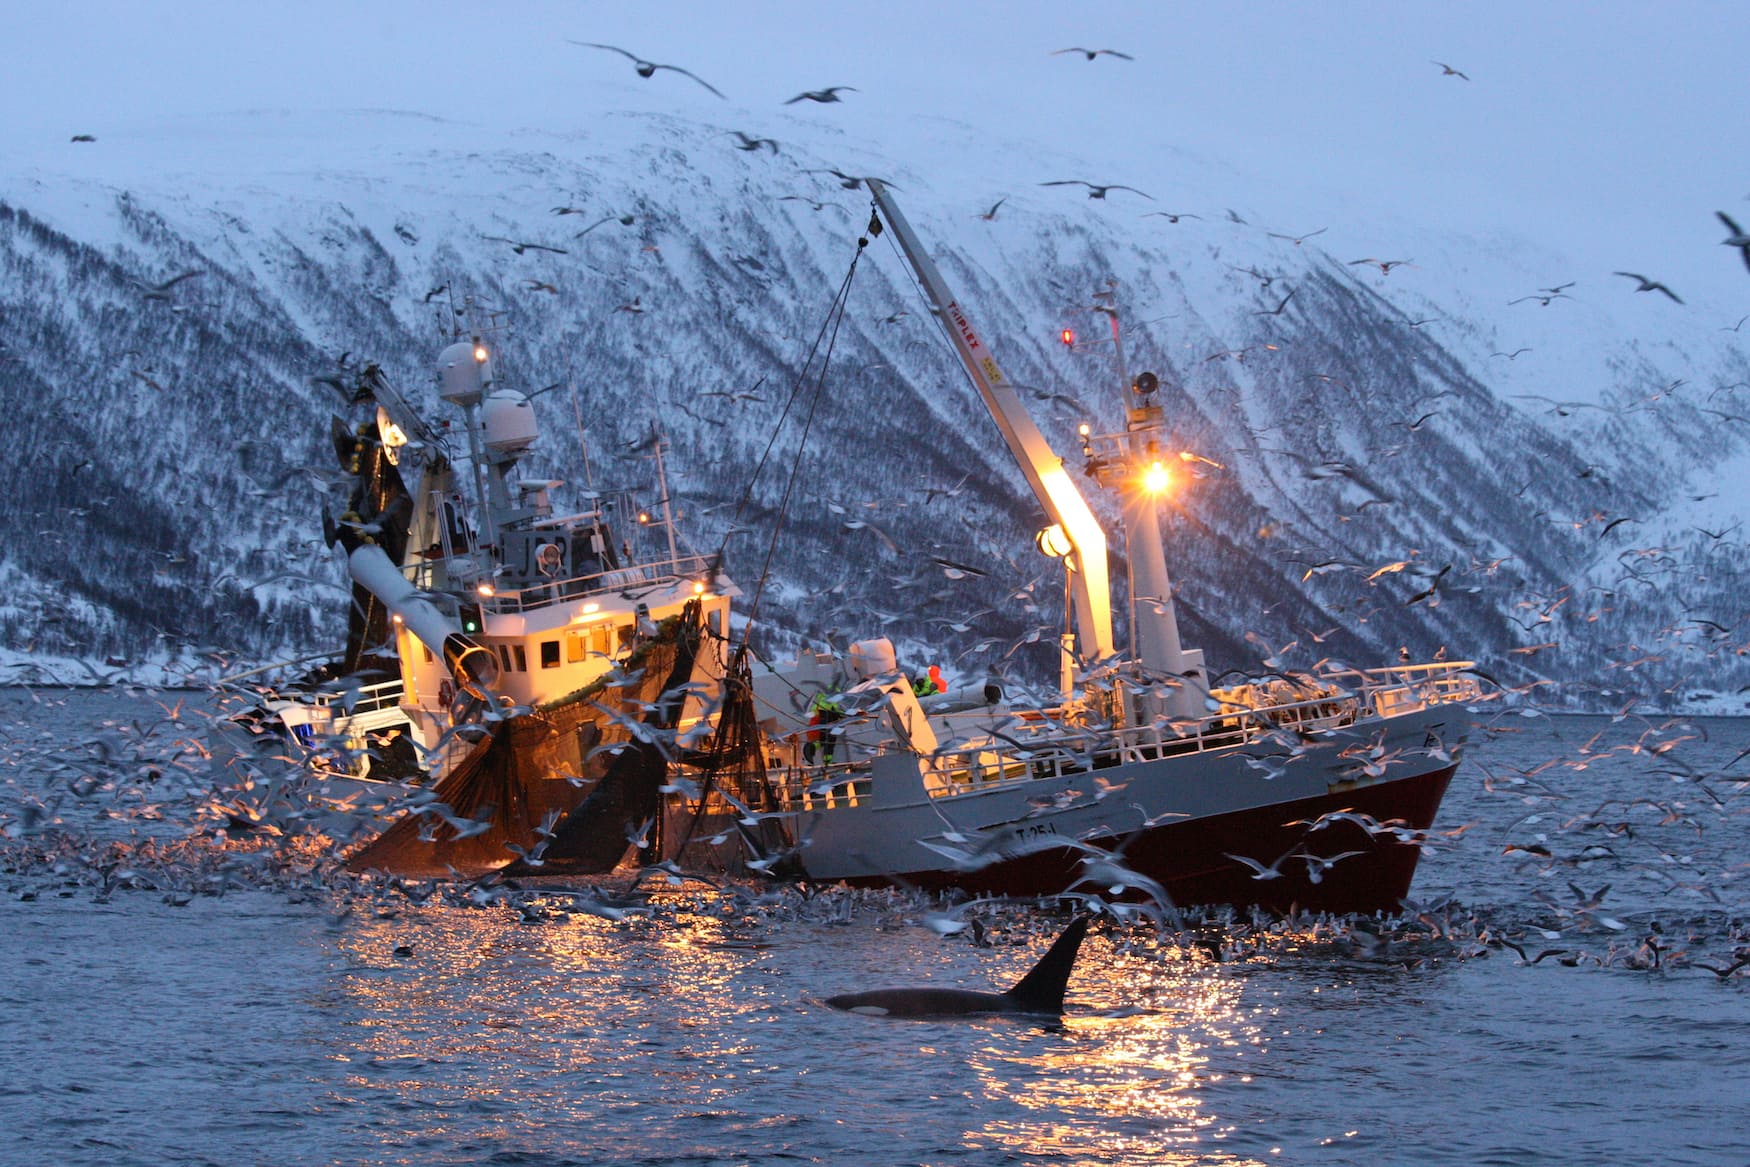 Möwen über Orcas in Norwegen